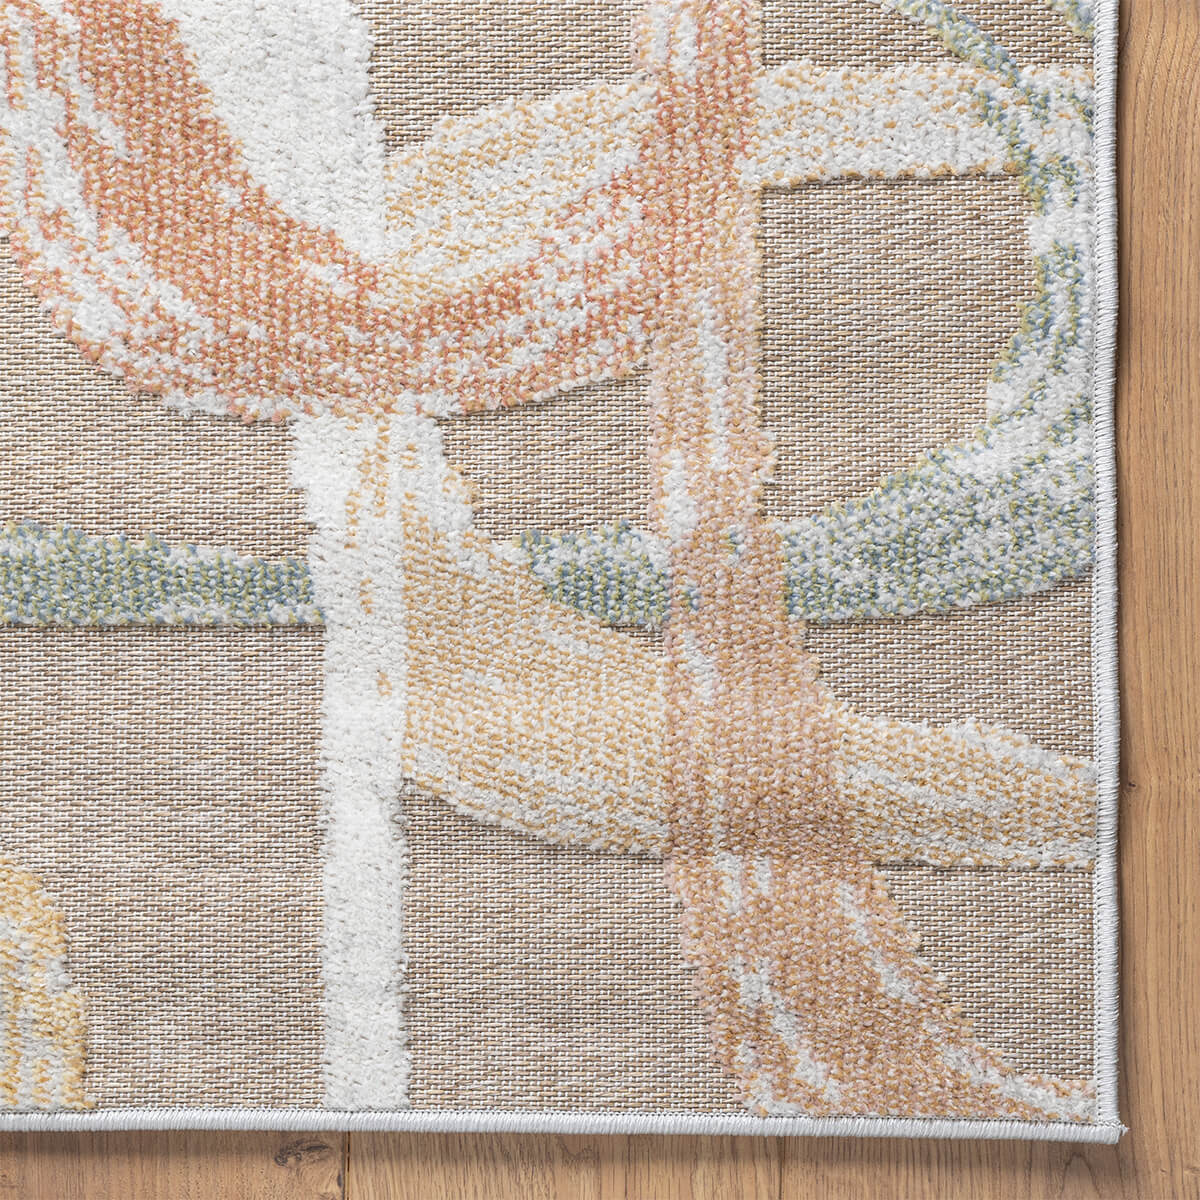 שטיח נייטשר 09 אפור/צבעוני NATURE